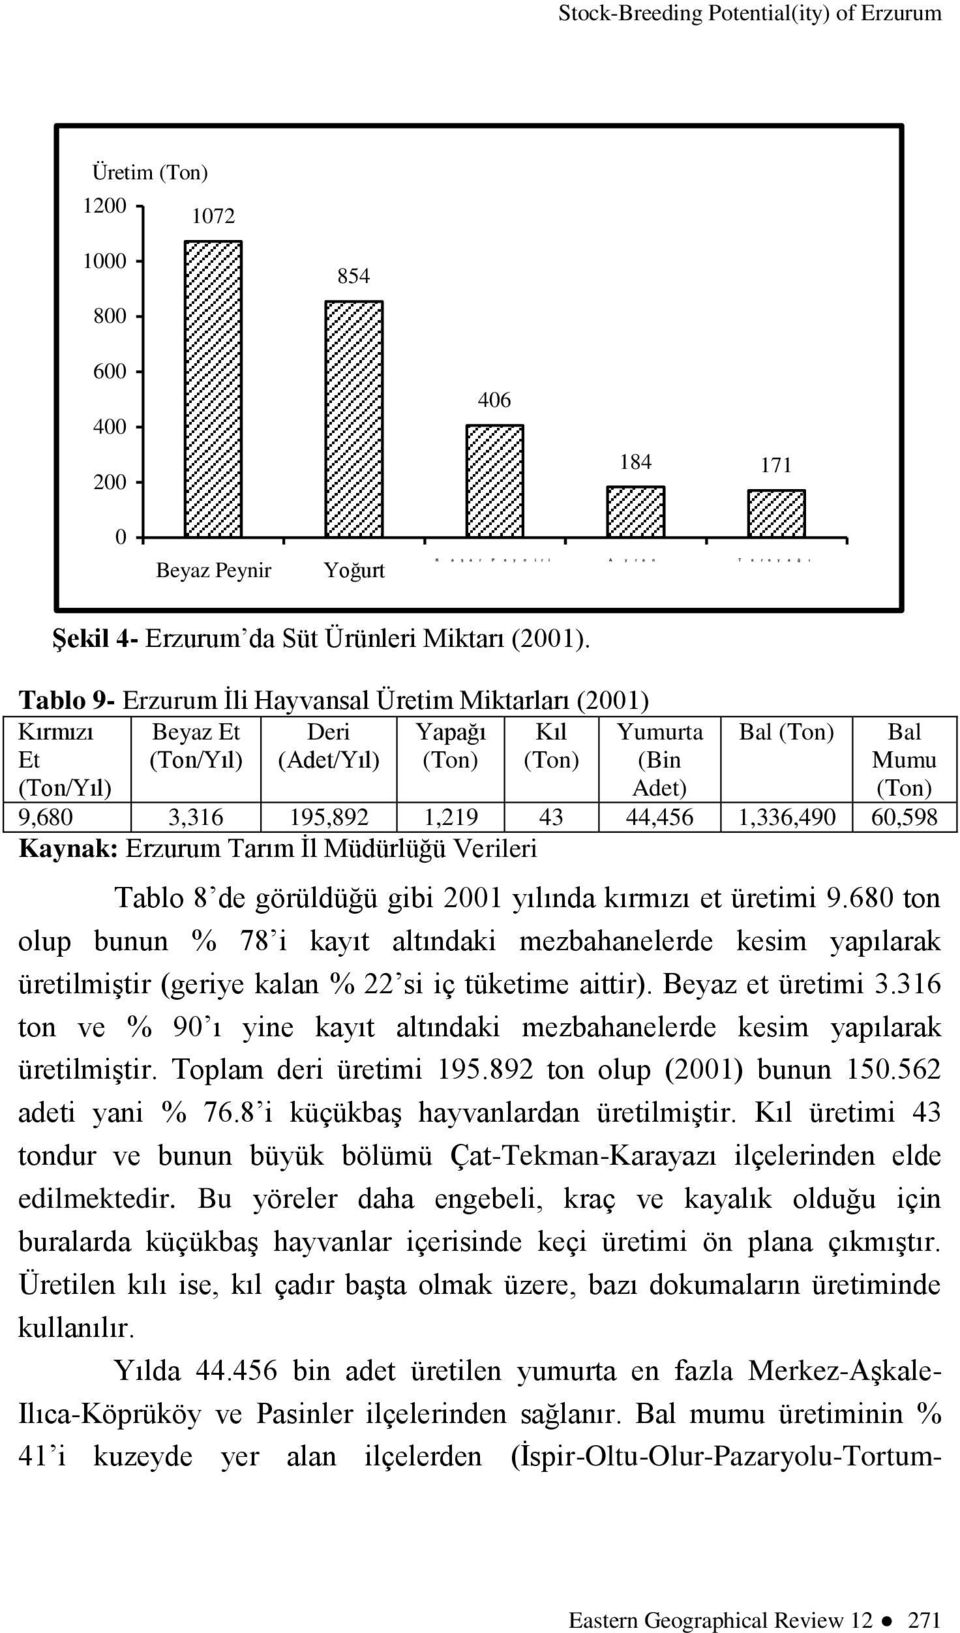 Tablo 9- Erzurum İli Hayvansal Üretim Miktarları (2001) Kırmızı Et (Ton/Yıl) Beyaz Et (Ton/Yıl) Deri (Adet/Yıl) Yapağı (Ton) Kıl (Ton) Yumurta (Bin Adet) Bal (Ton) Bal Mumu (Ton) 9,680 3,316 195,892